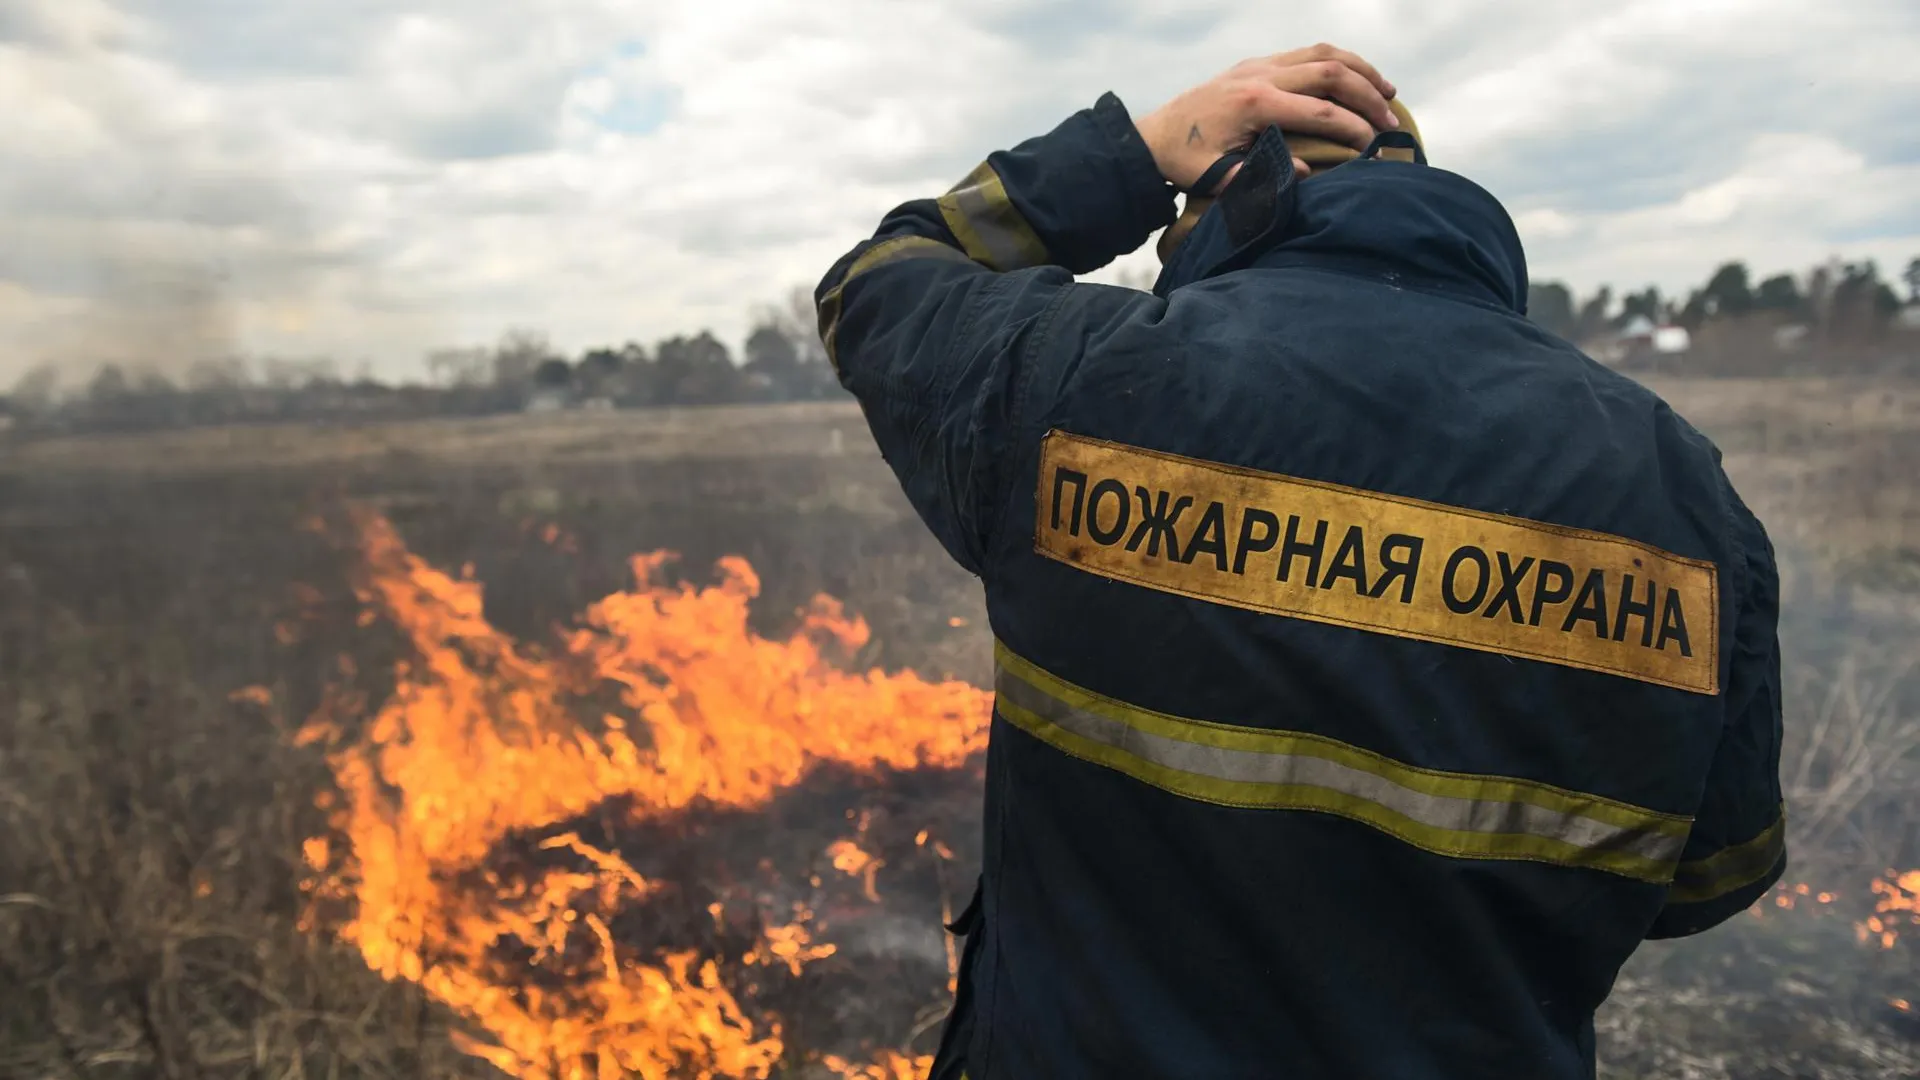 Около 150 лесных пожаров произошло в Подмосковье с середины апреля